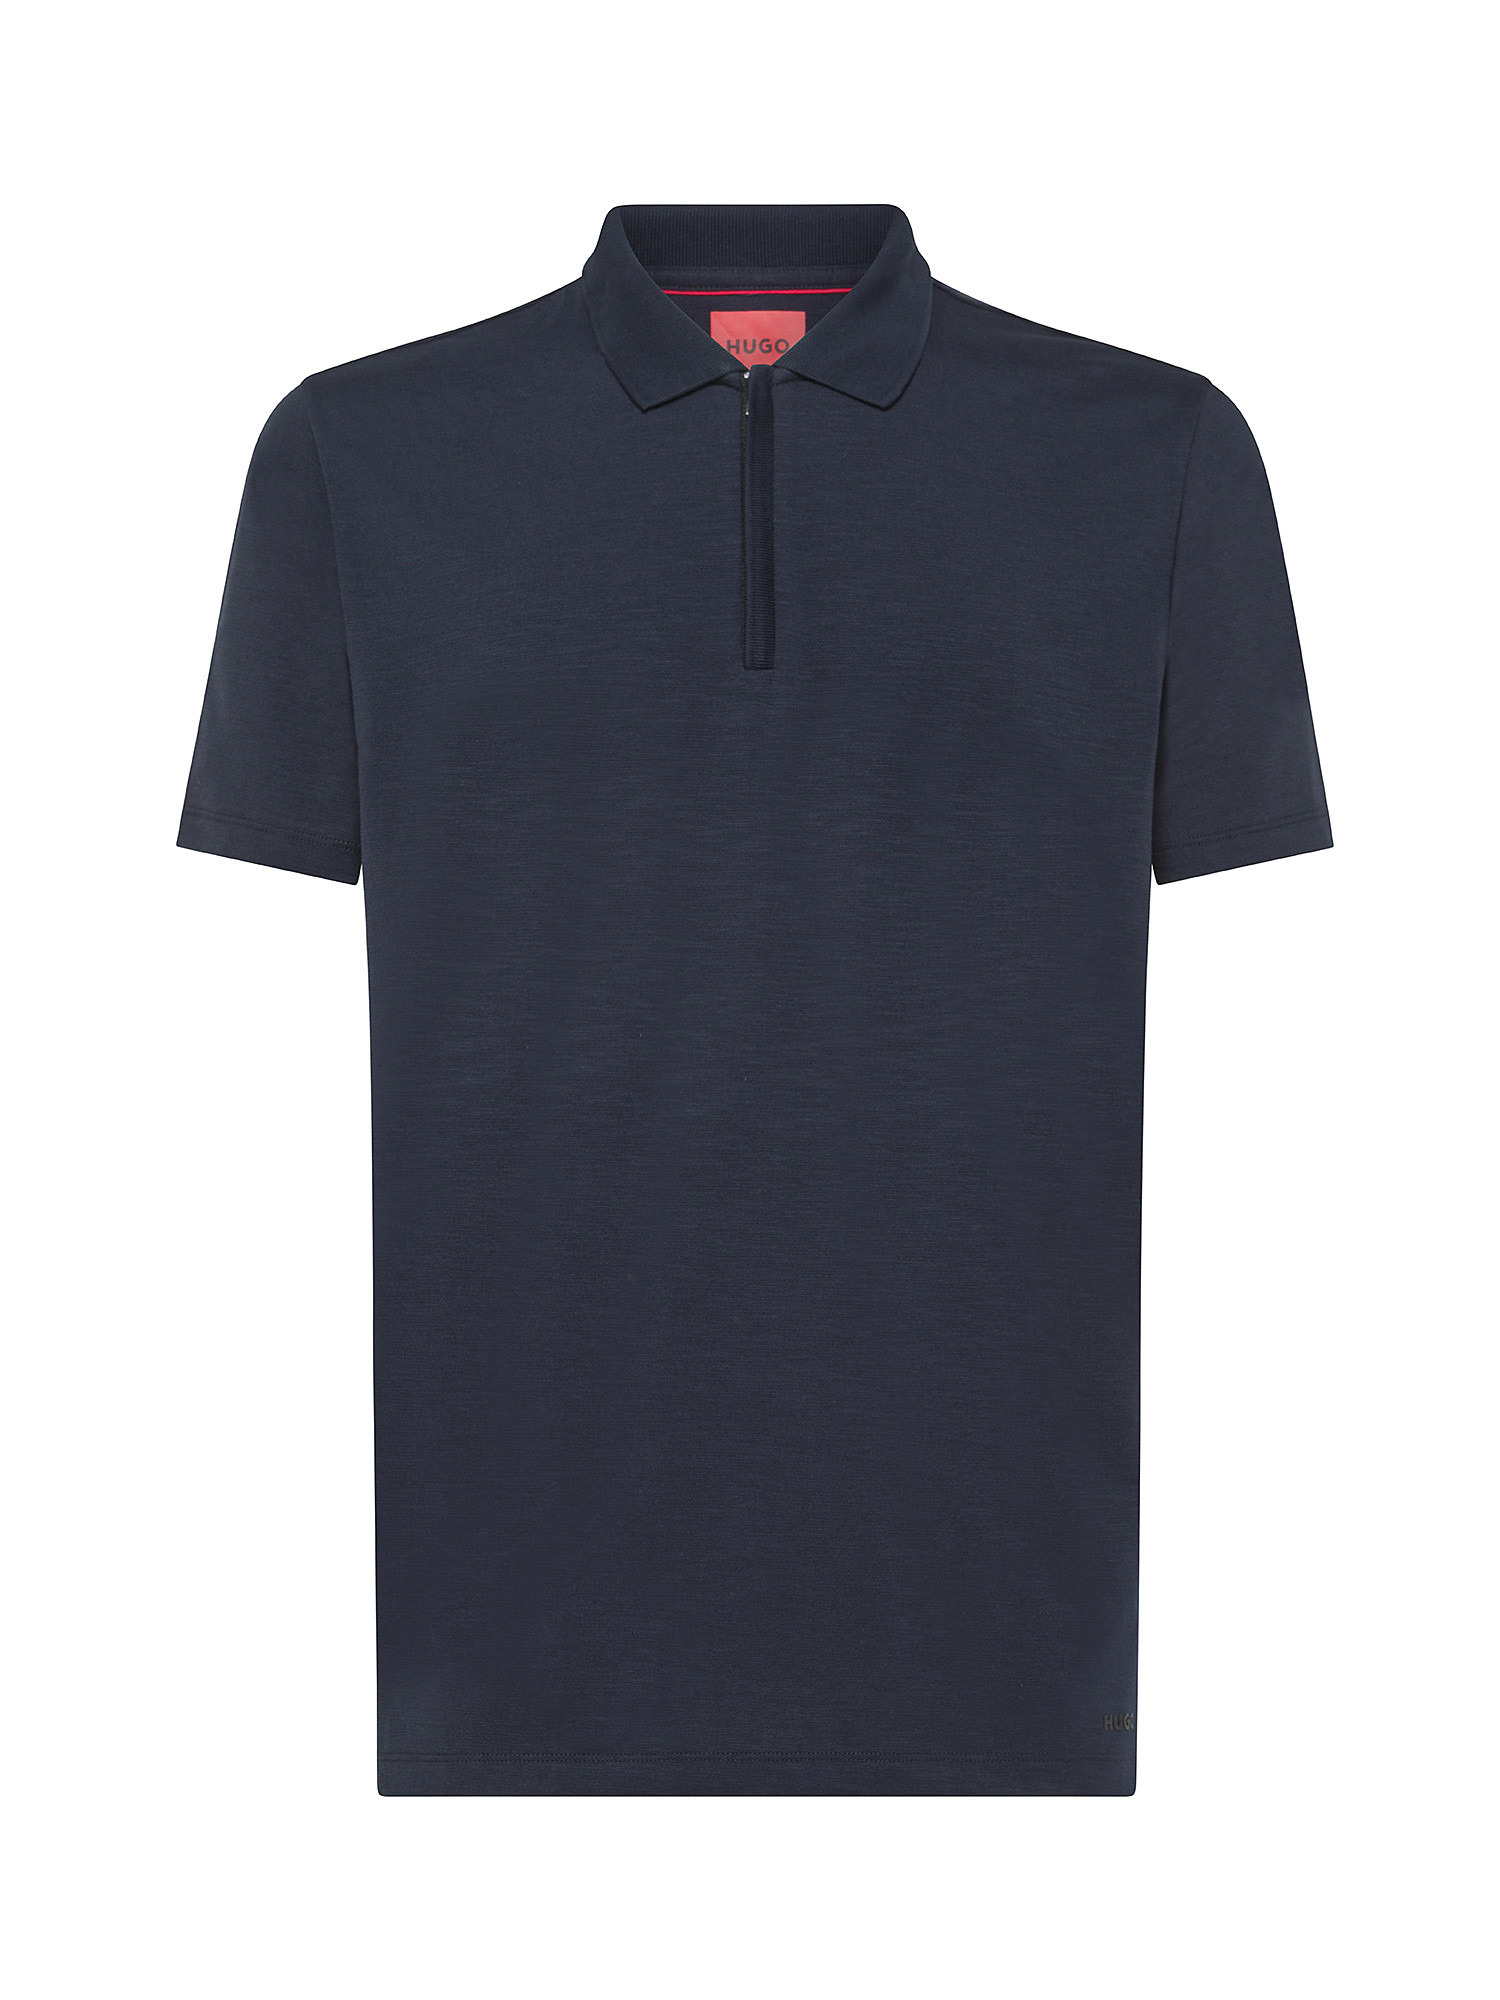 Hugo - Cotton blend polo shirt, Dark Blue, large image number 0